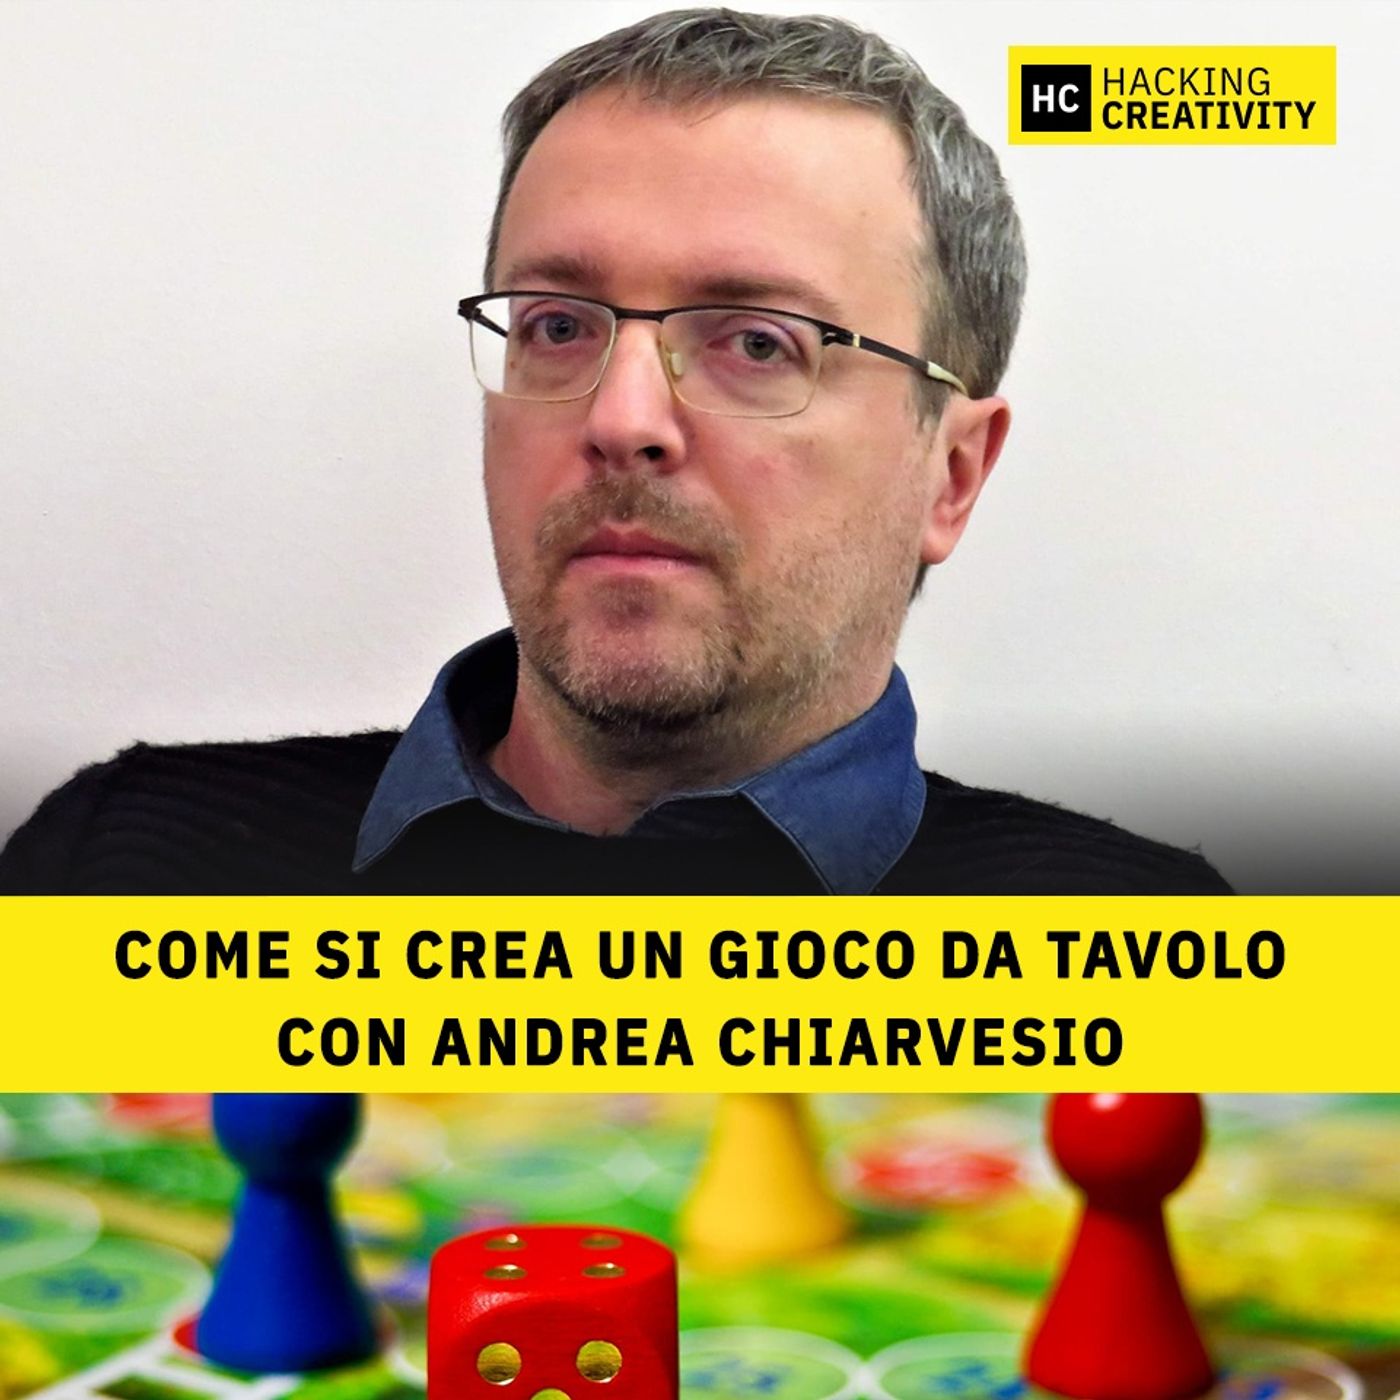 97 - Come si crea un gioco da tavolo con Andrea Chiarvesio